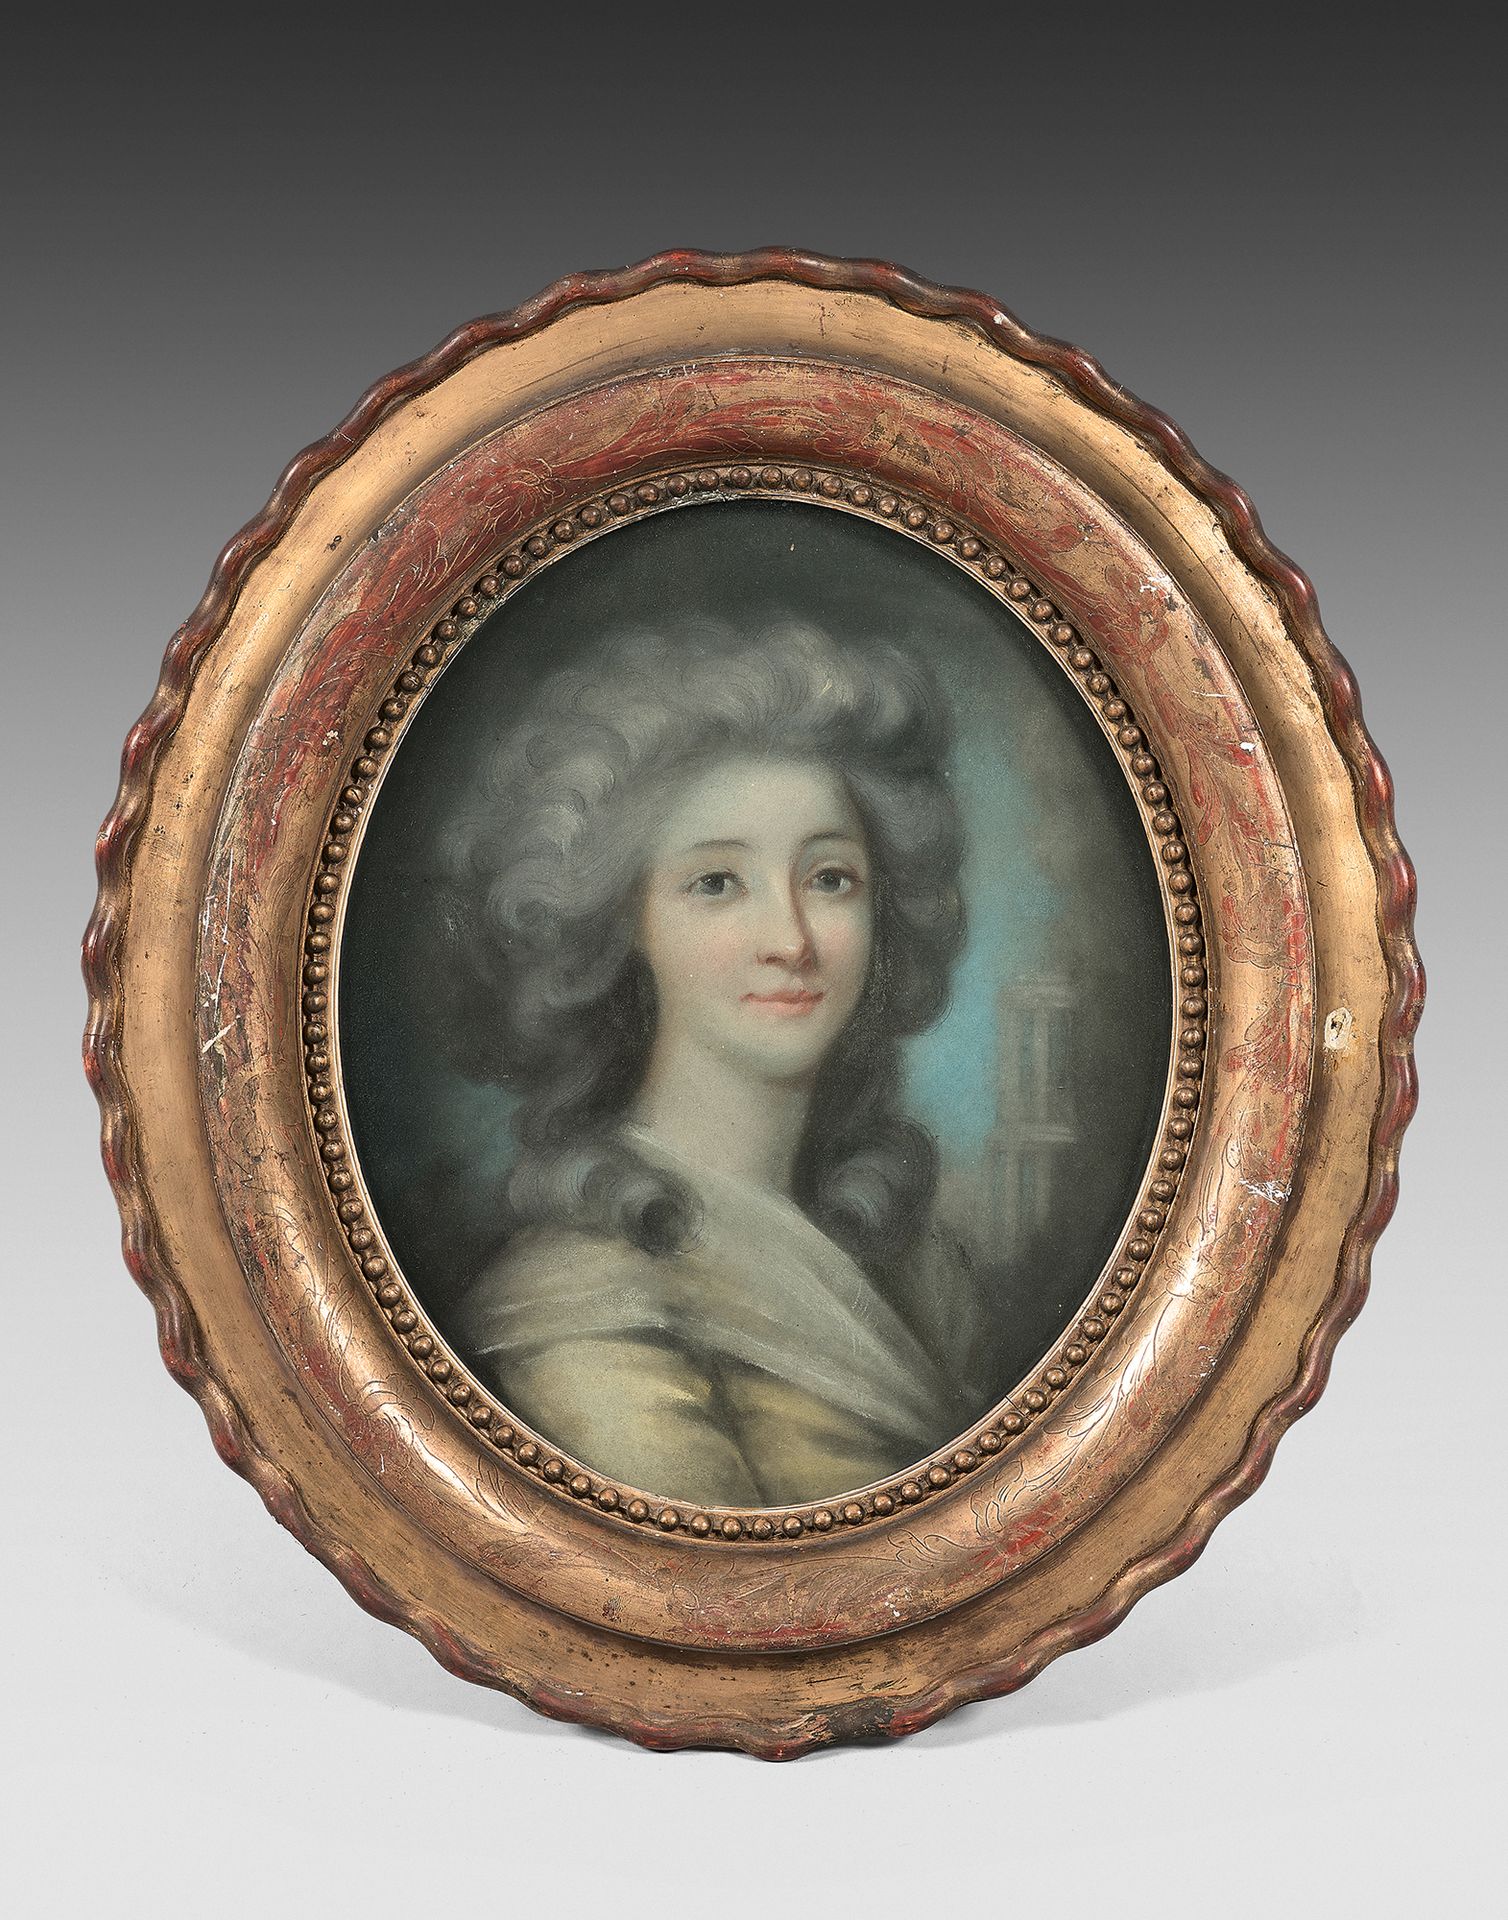 École FRANÇAISE de la fin du XVIIIe siècle 戴着帽子的年轻女子的肖像
戴着白领巾的年轻女子的画像
椭圆形粉彩画一对。
&hellip;